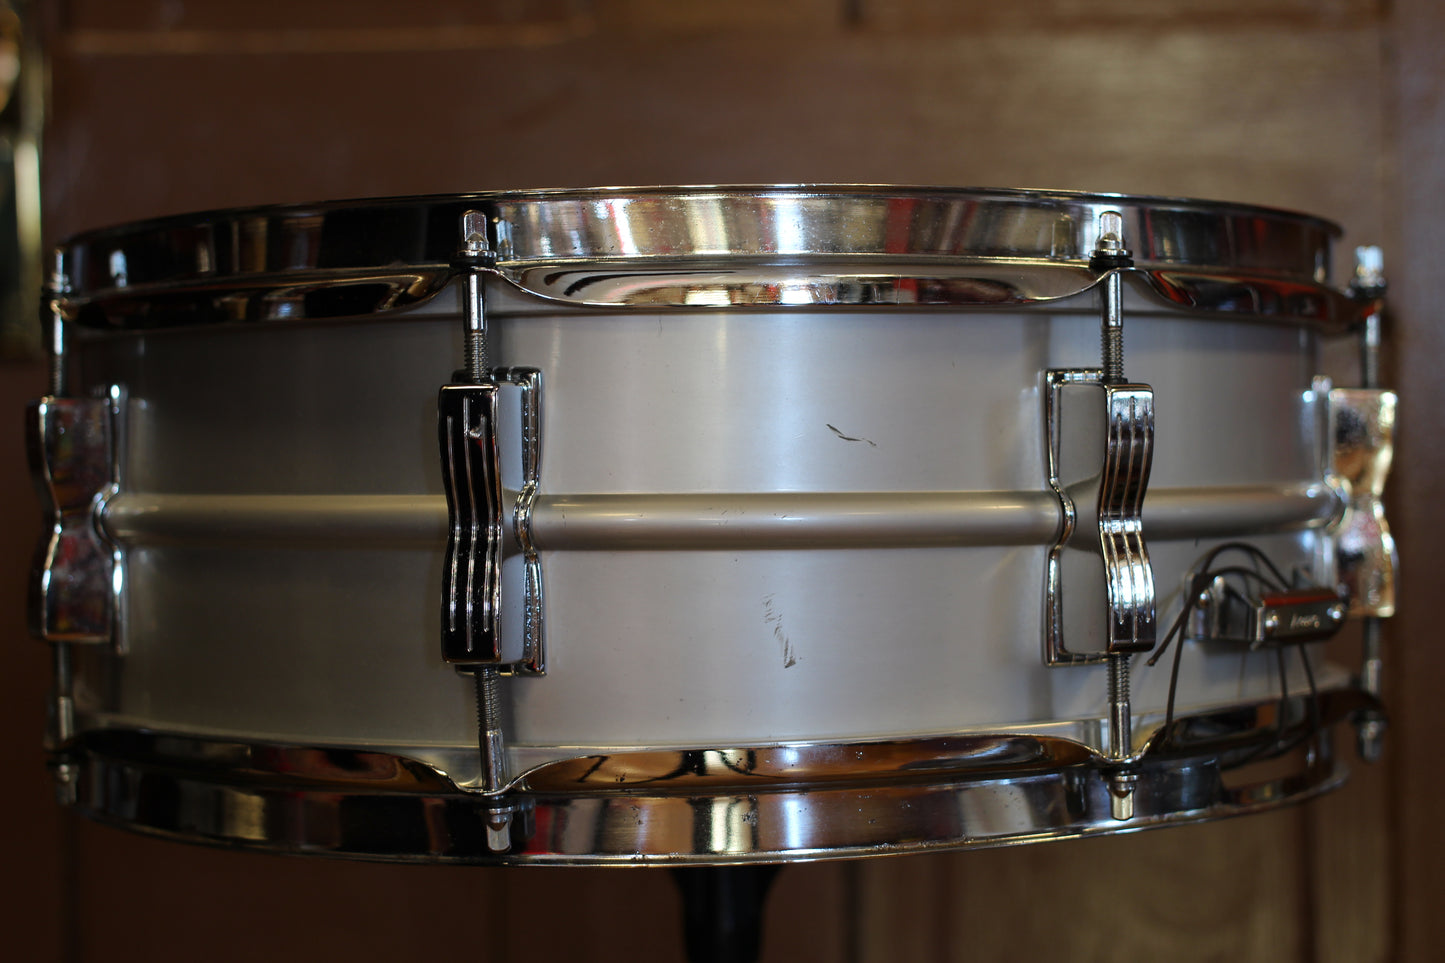 1976 Ludwig 5"x14" Acrolite Snare Drum Serial # 939229